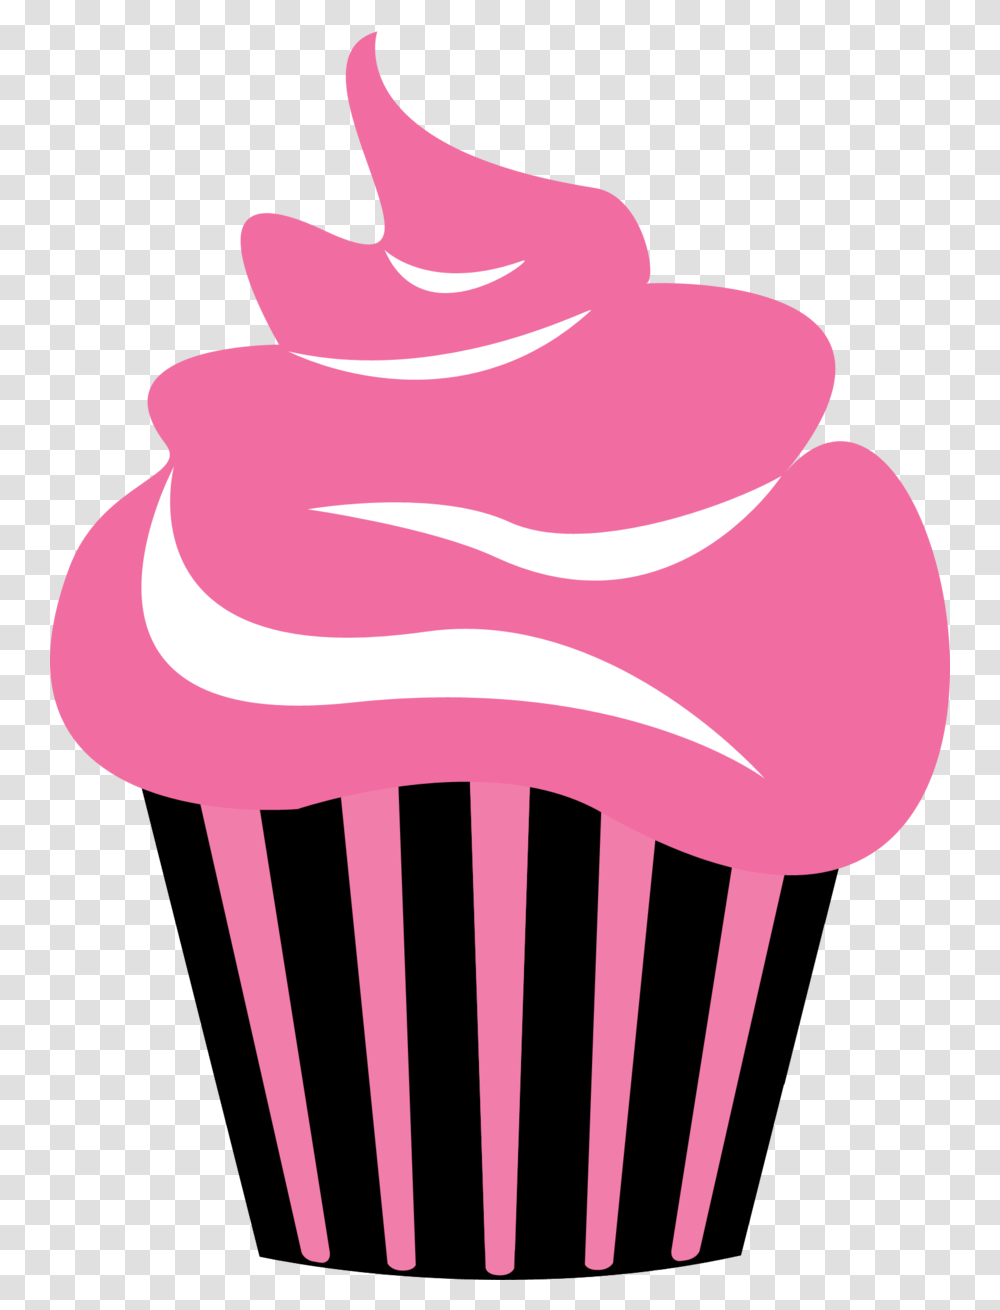 Download Hd Cupcake Logos Clipart Free Logo Cupcake Icon, Cream, Dessert, Food, Creme Transparent Png